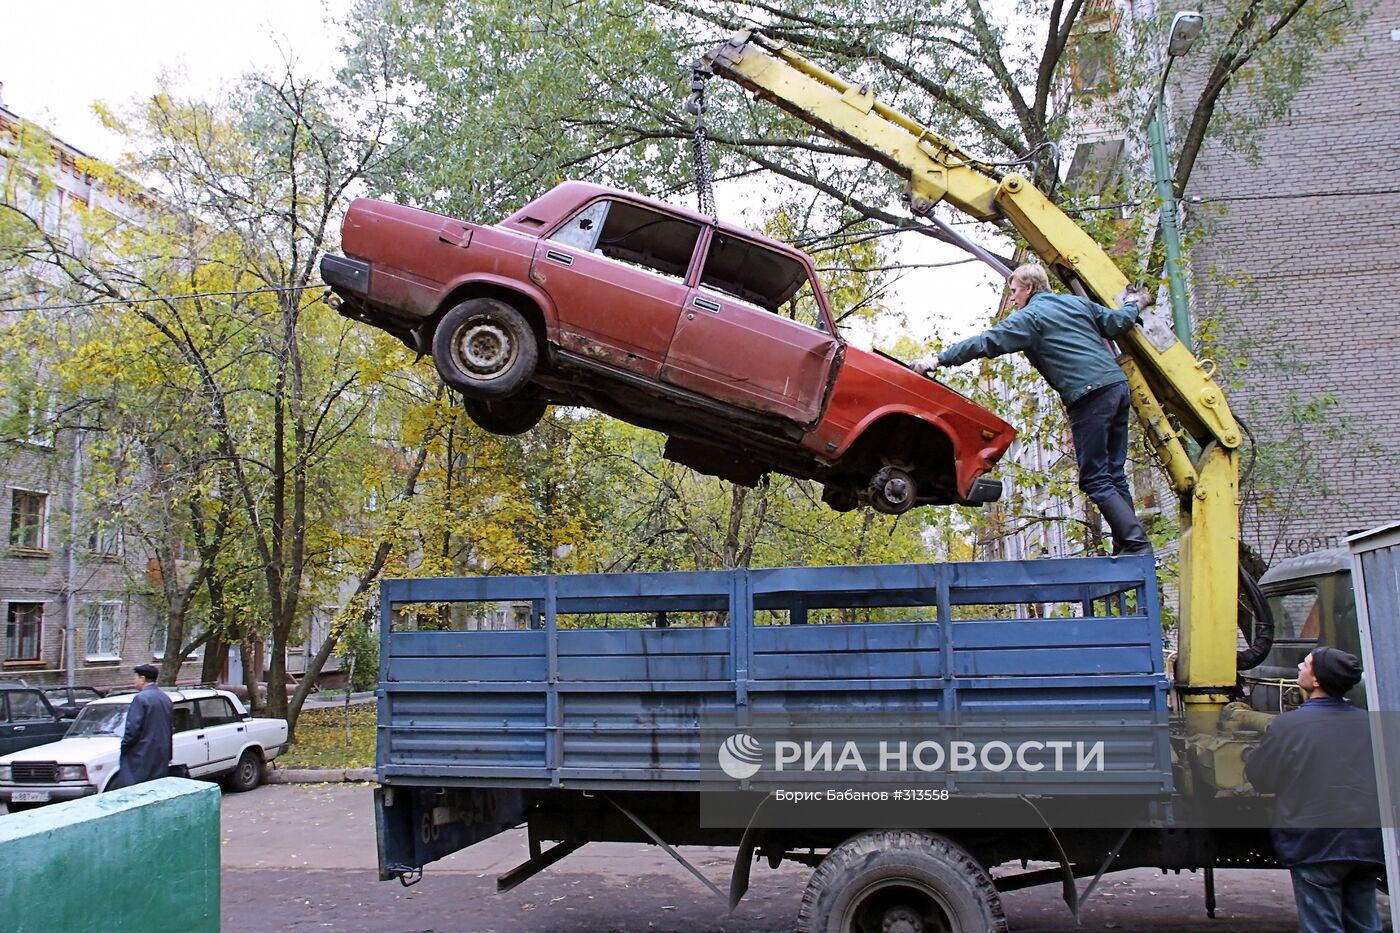 Уборка автомусора в Москве